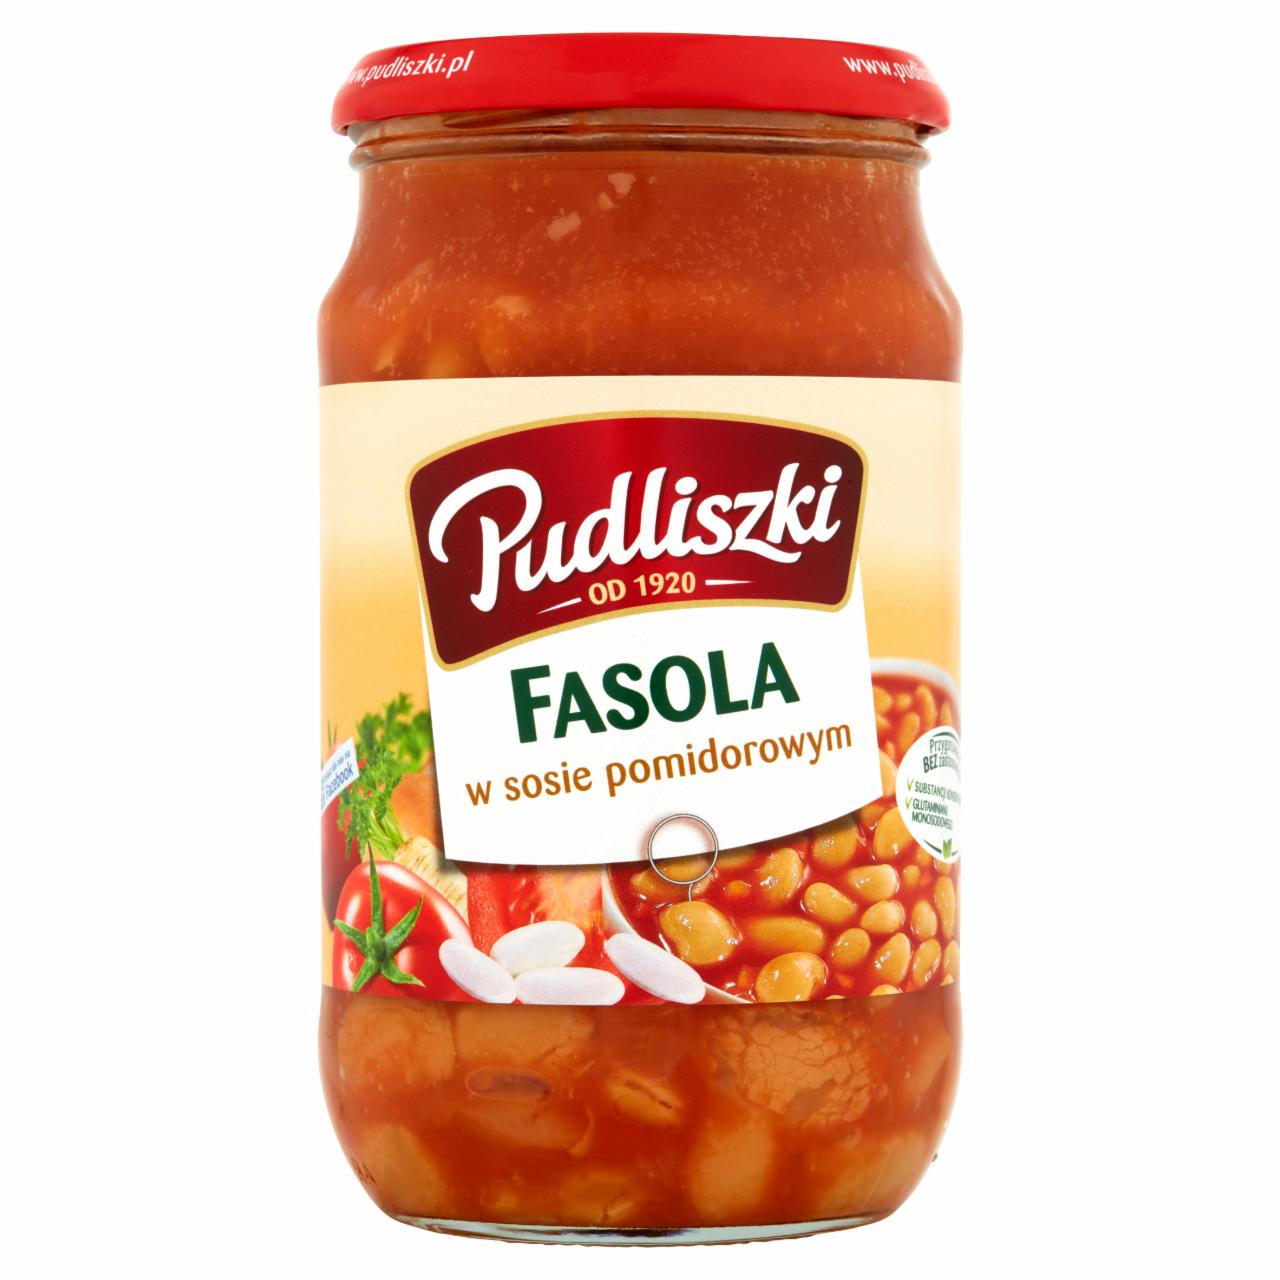 Zdjęcia - Pudliszki Fasola w sosie pomidorowym 620 g